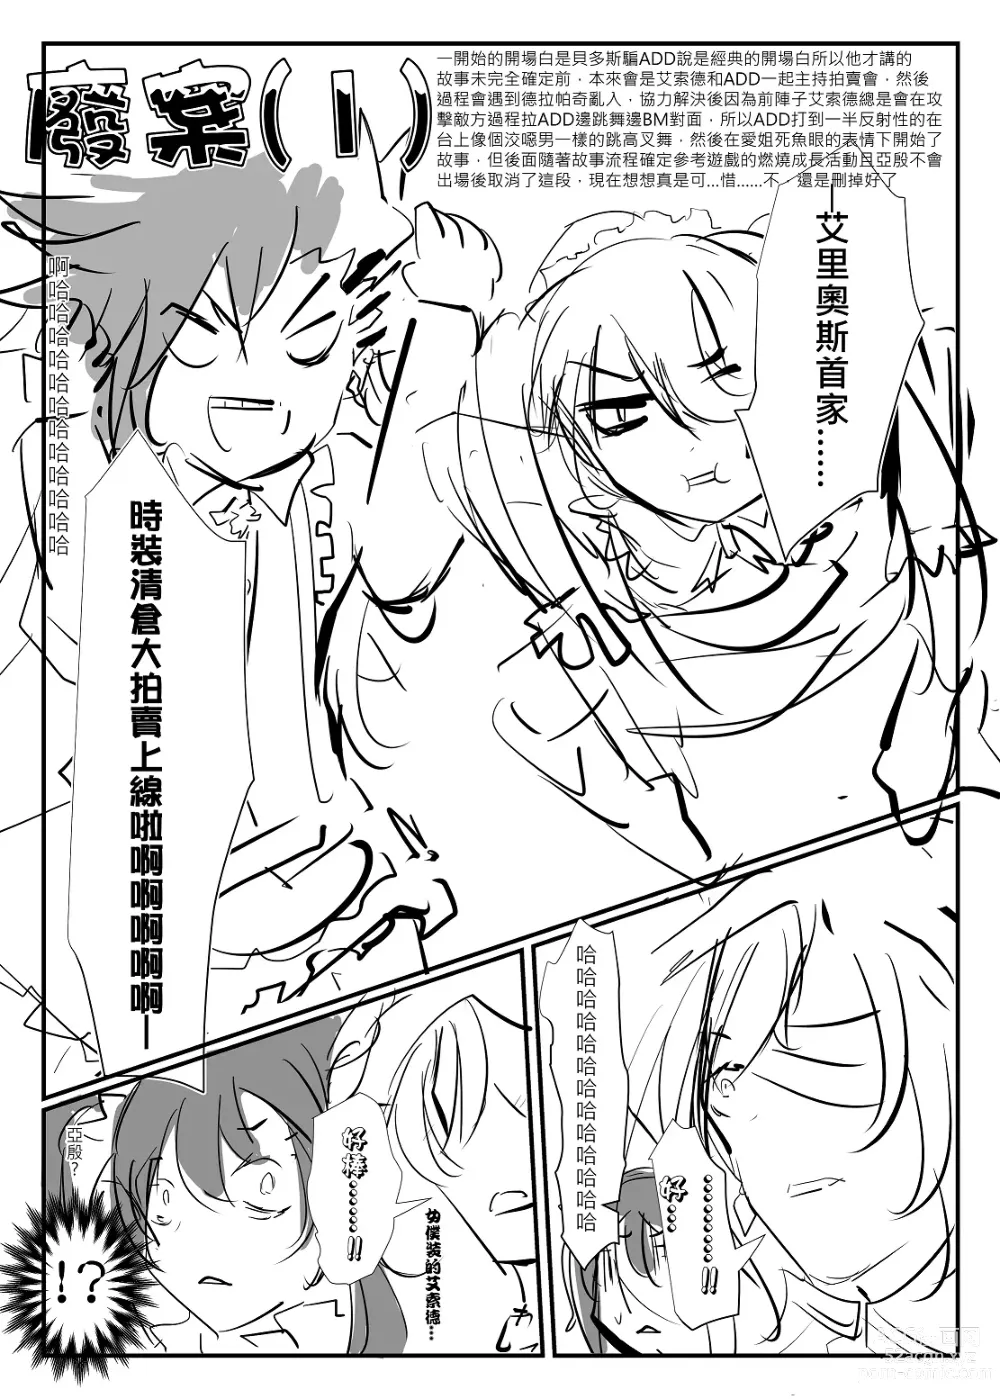 Page 105 of doujinshi ELSWORD:TYPE-V (decensored)